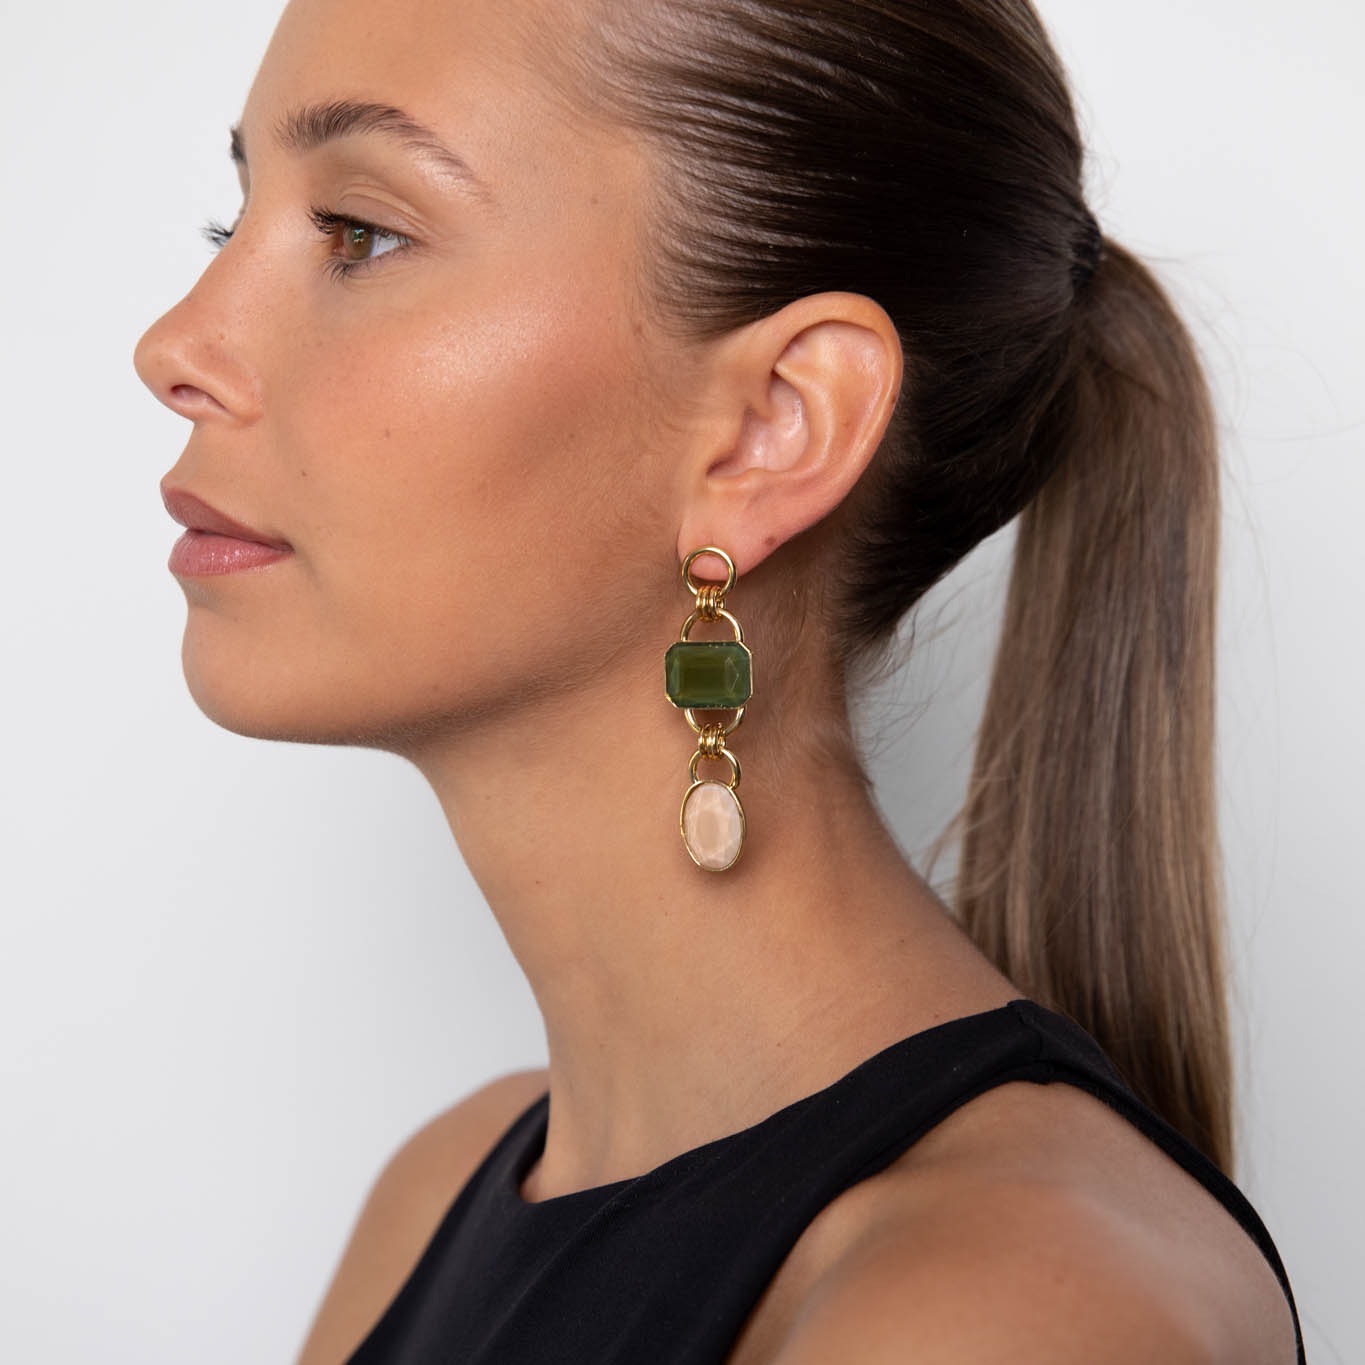 Tiffany green/nude long earrings